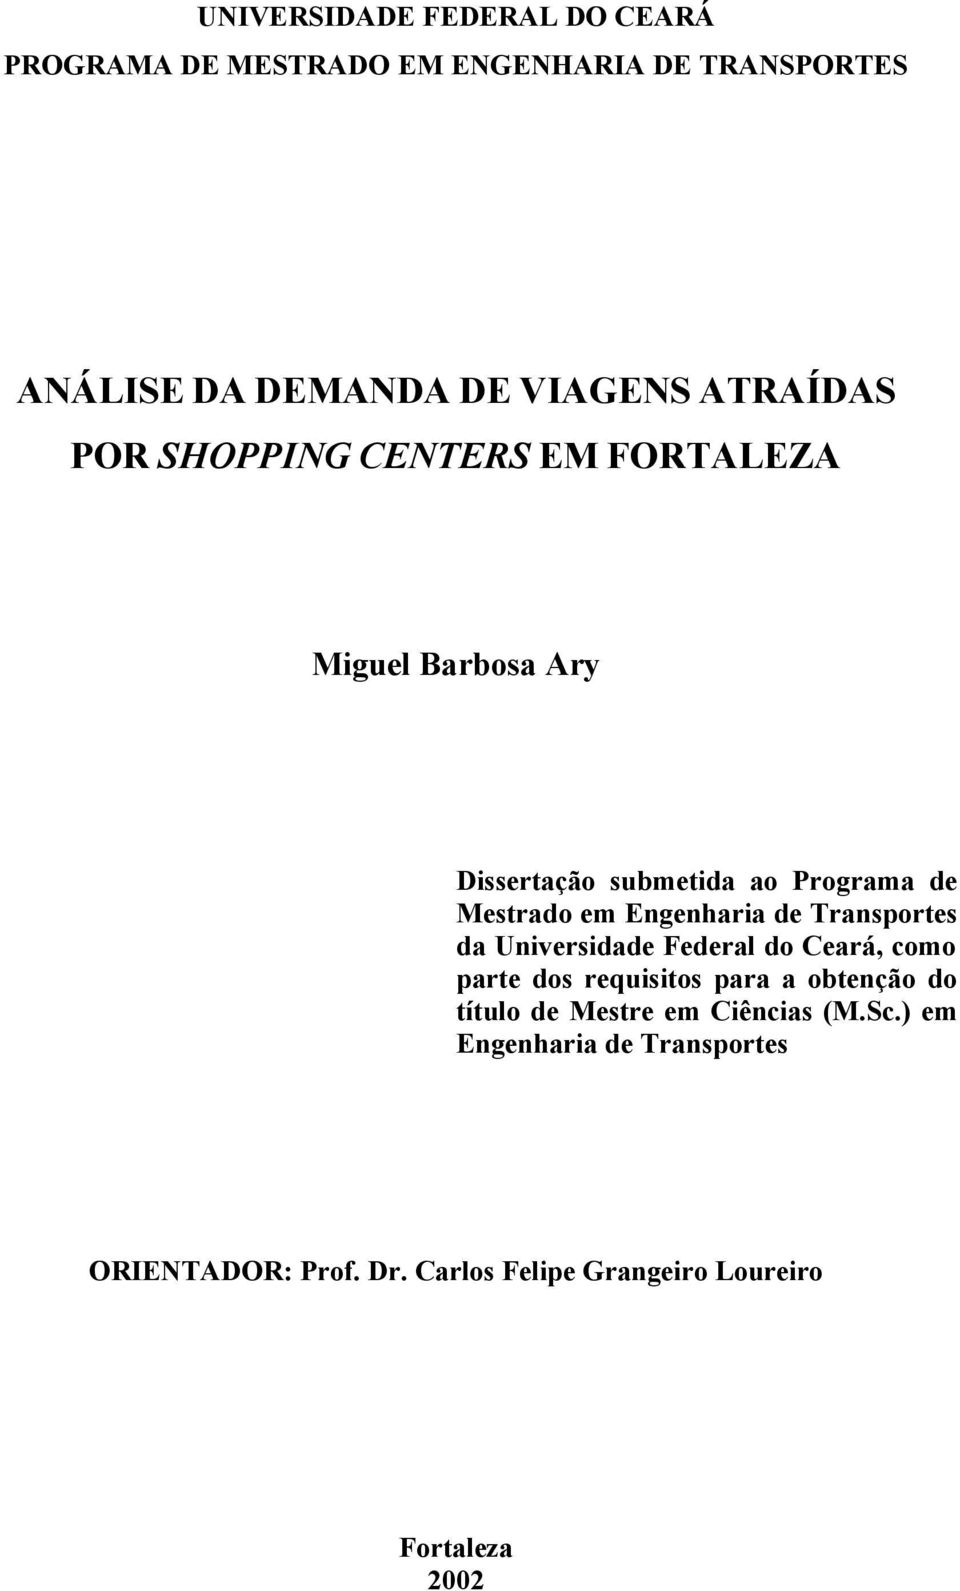 Engenharia de Transportes da Universidade Federal do Ceará, como parte dos requisitos para a obtenção do título de